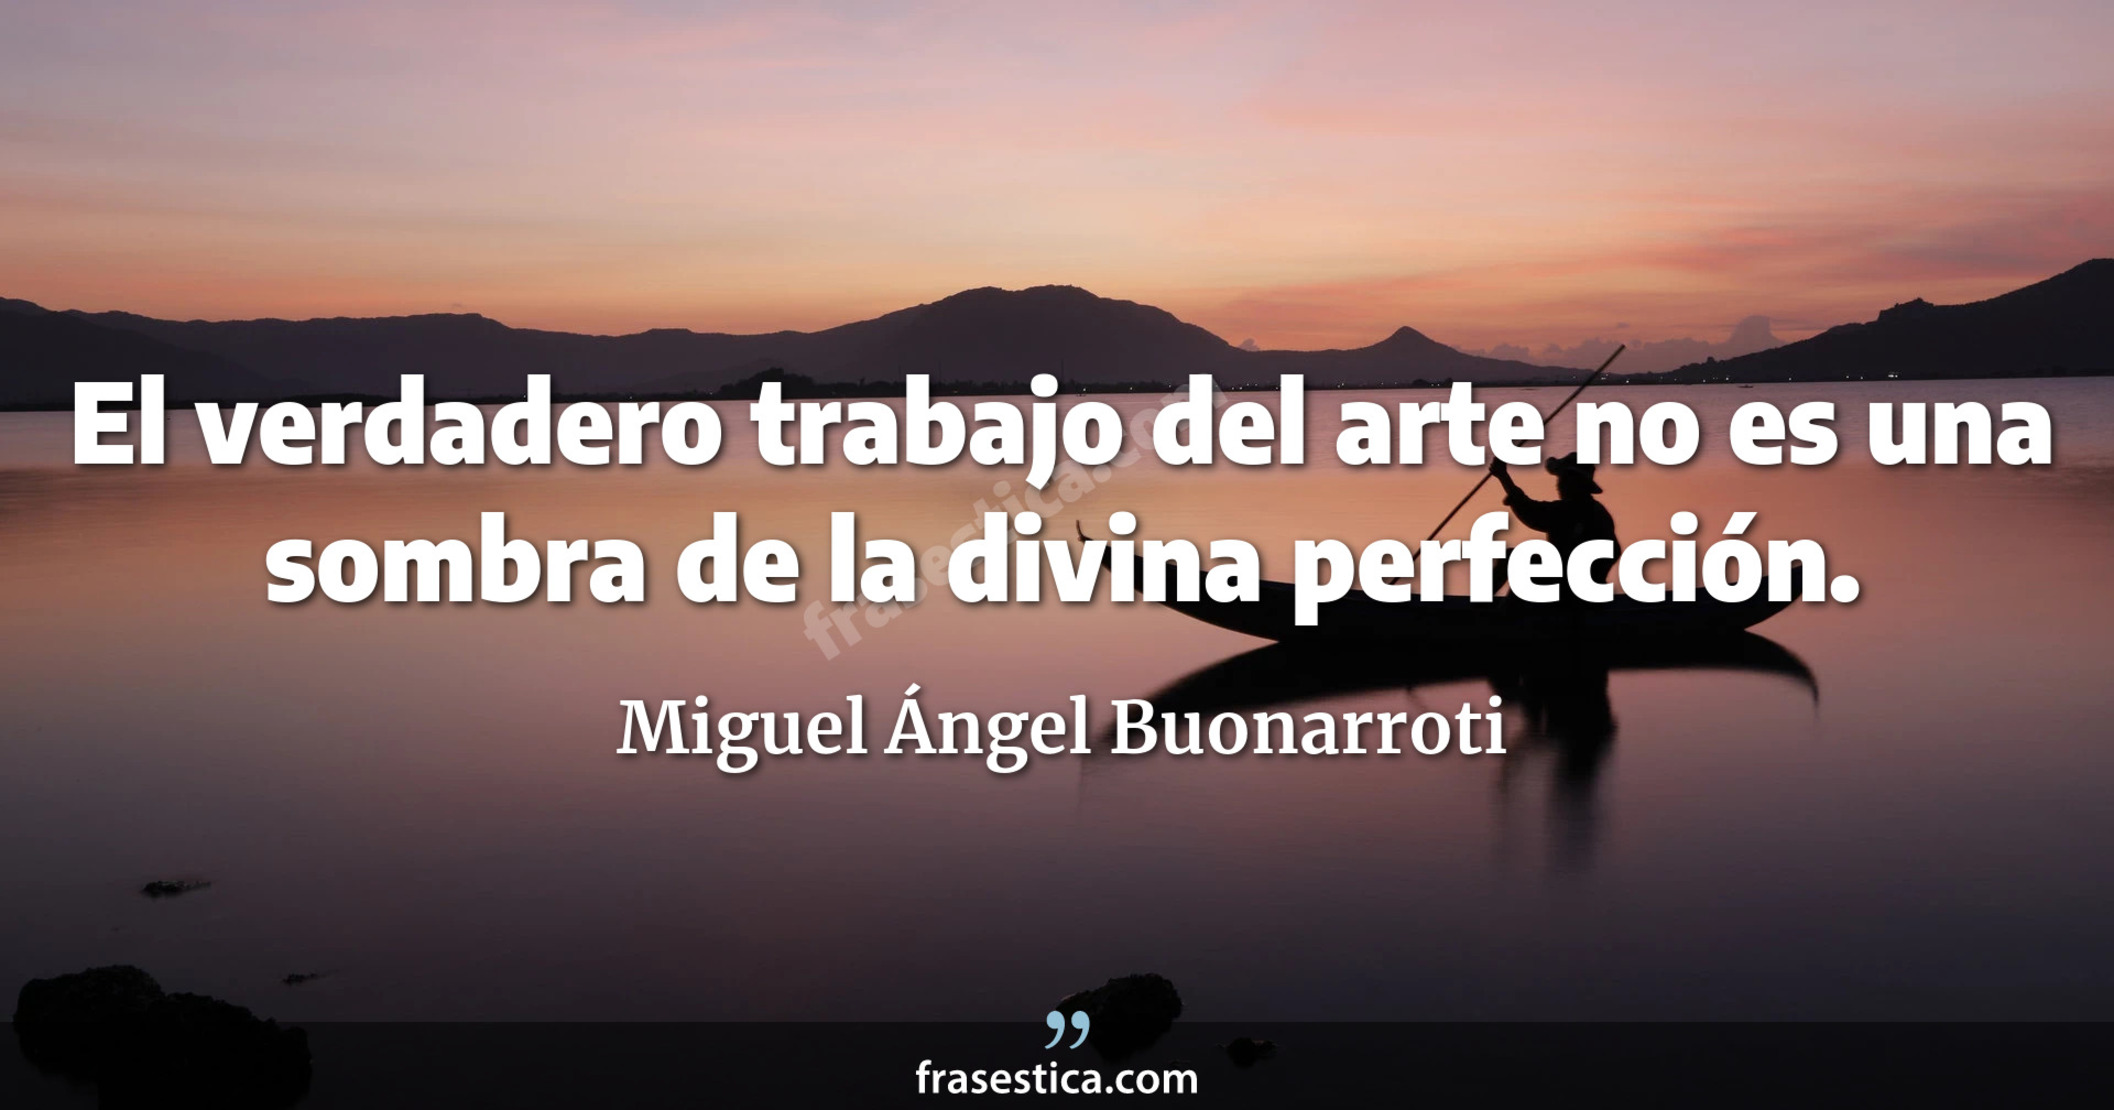 El verdadero trabajo del arte no es una sombra de la divina perfección. - Miguel Ángel Buonarroti